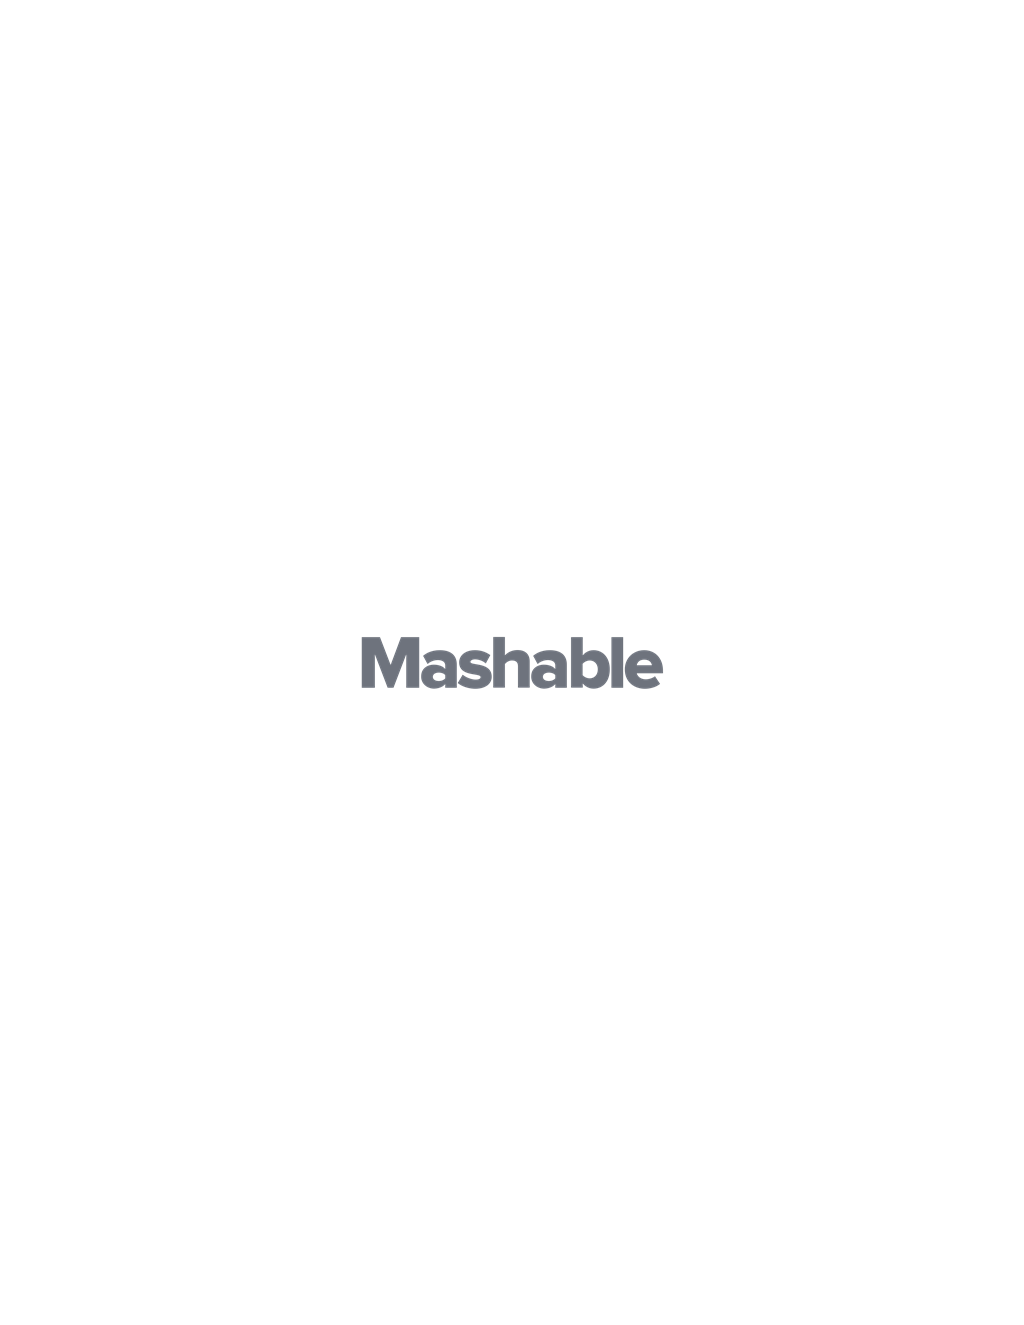 Mashable logotype, transparent .png, medium, large